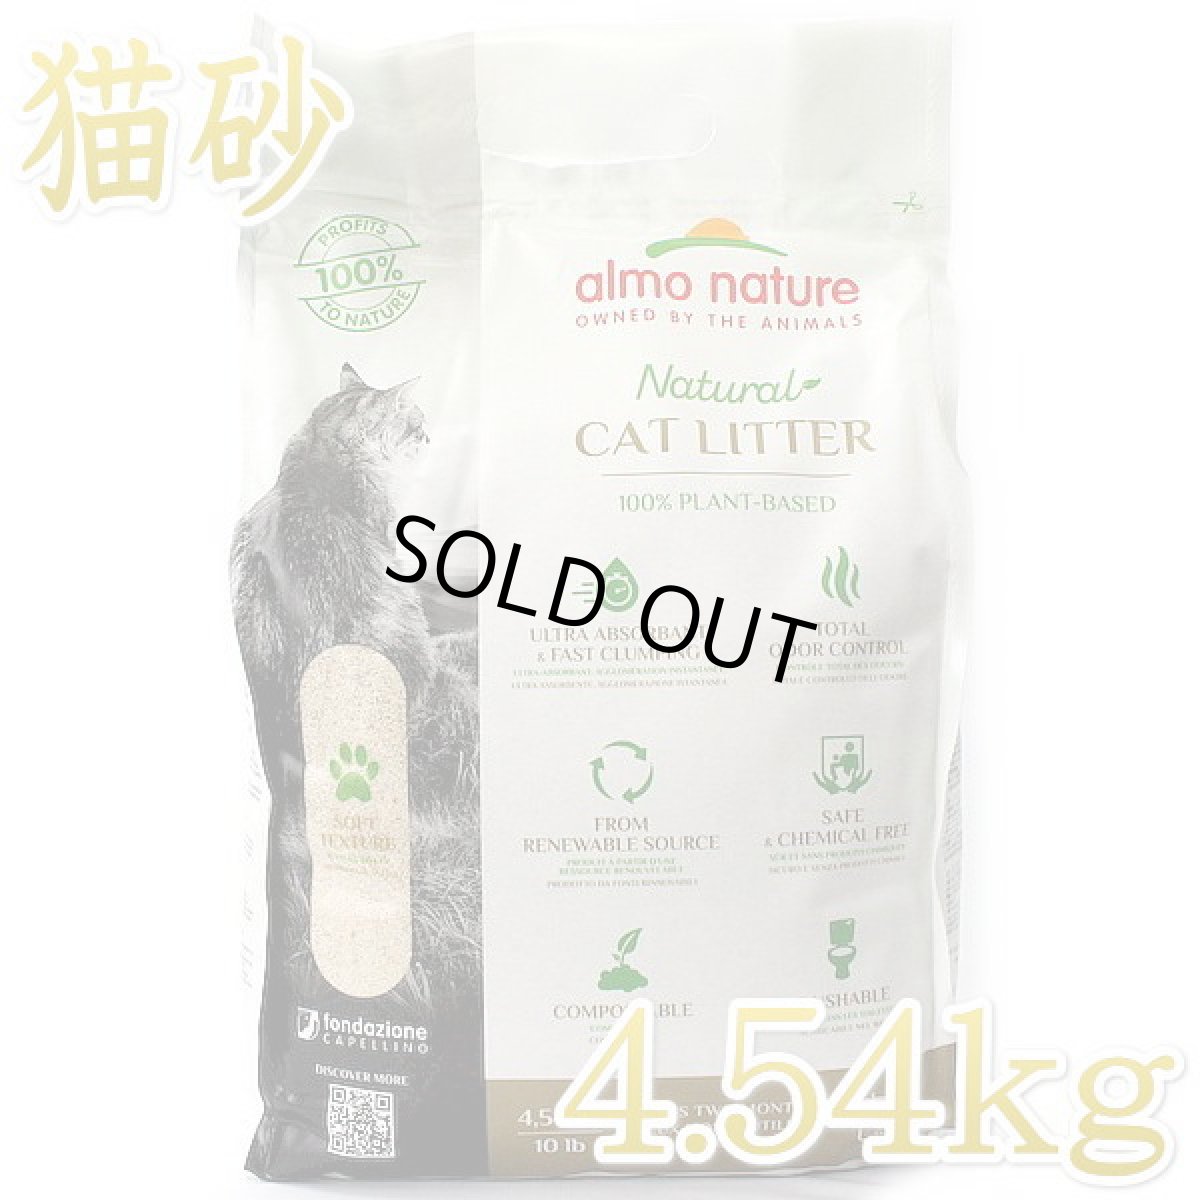 画像1: 製造日2023.9.13（使用期限3年）アルモネイチャー キャットリター 4.54kg 100%植物素材 固まるけどトイレに流せる猫砂alc77 (1)